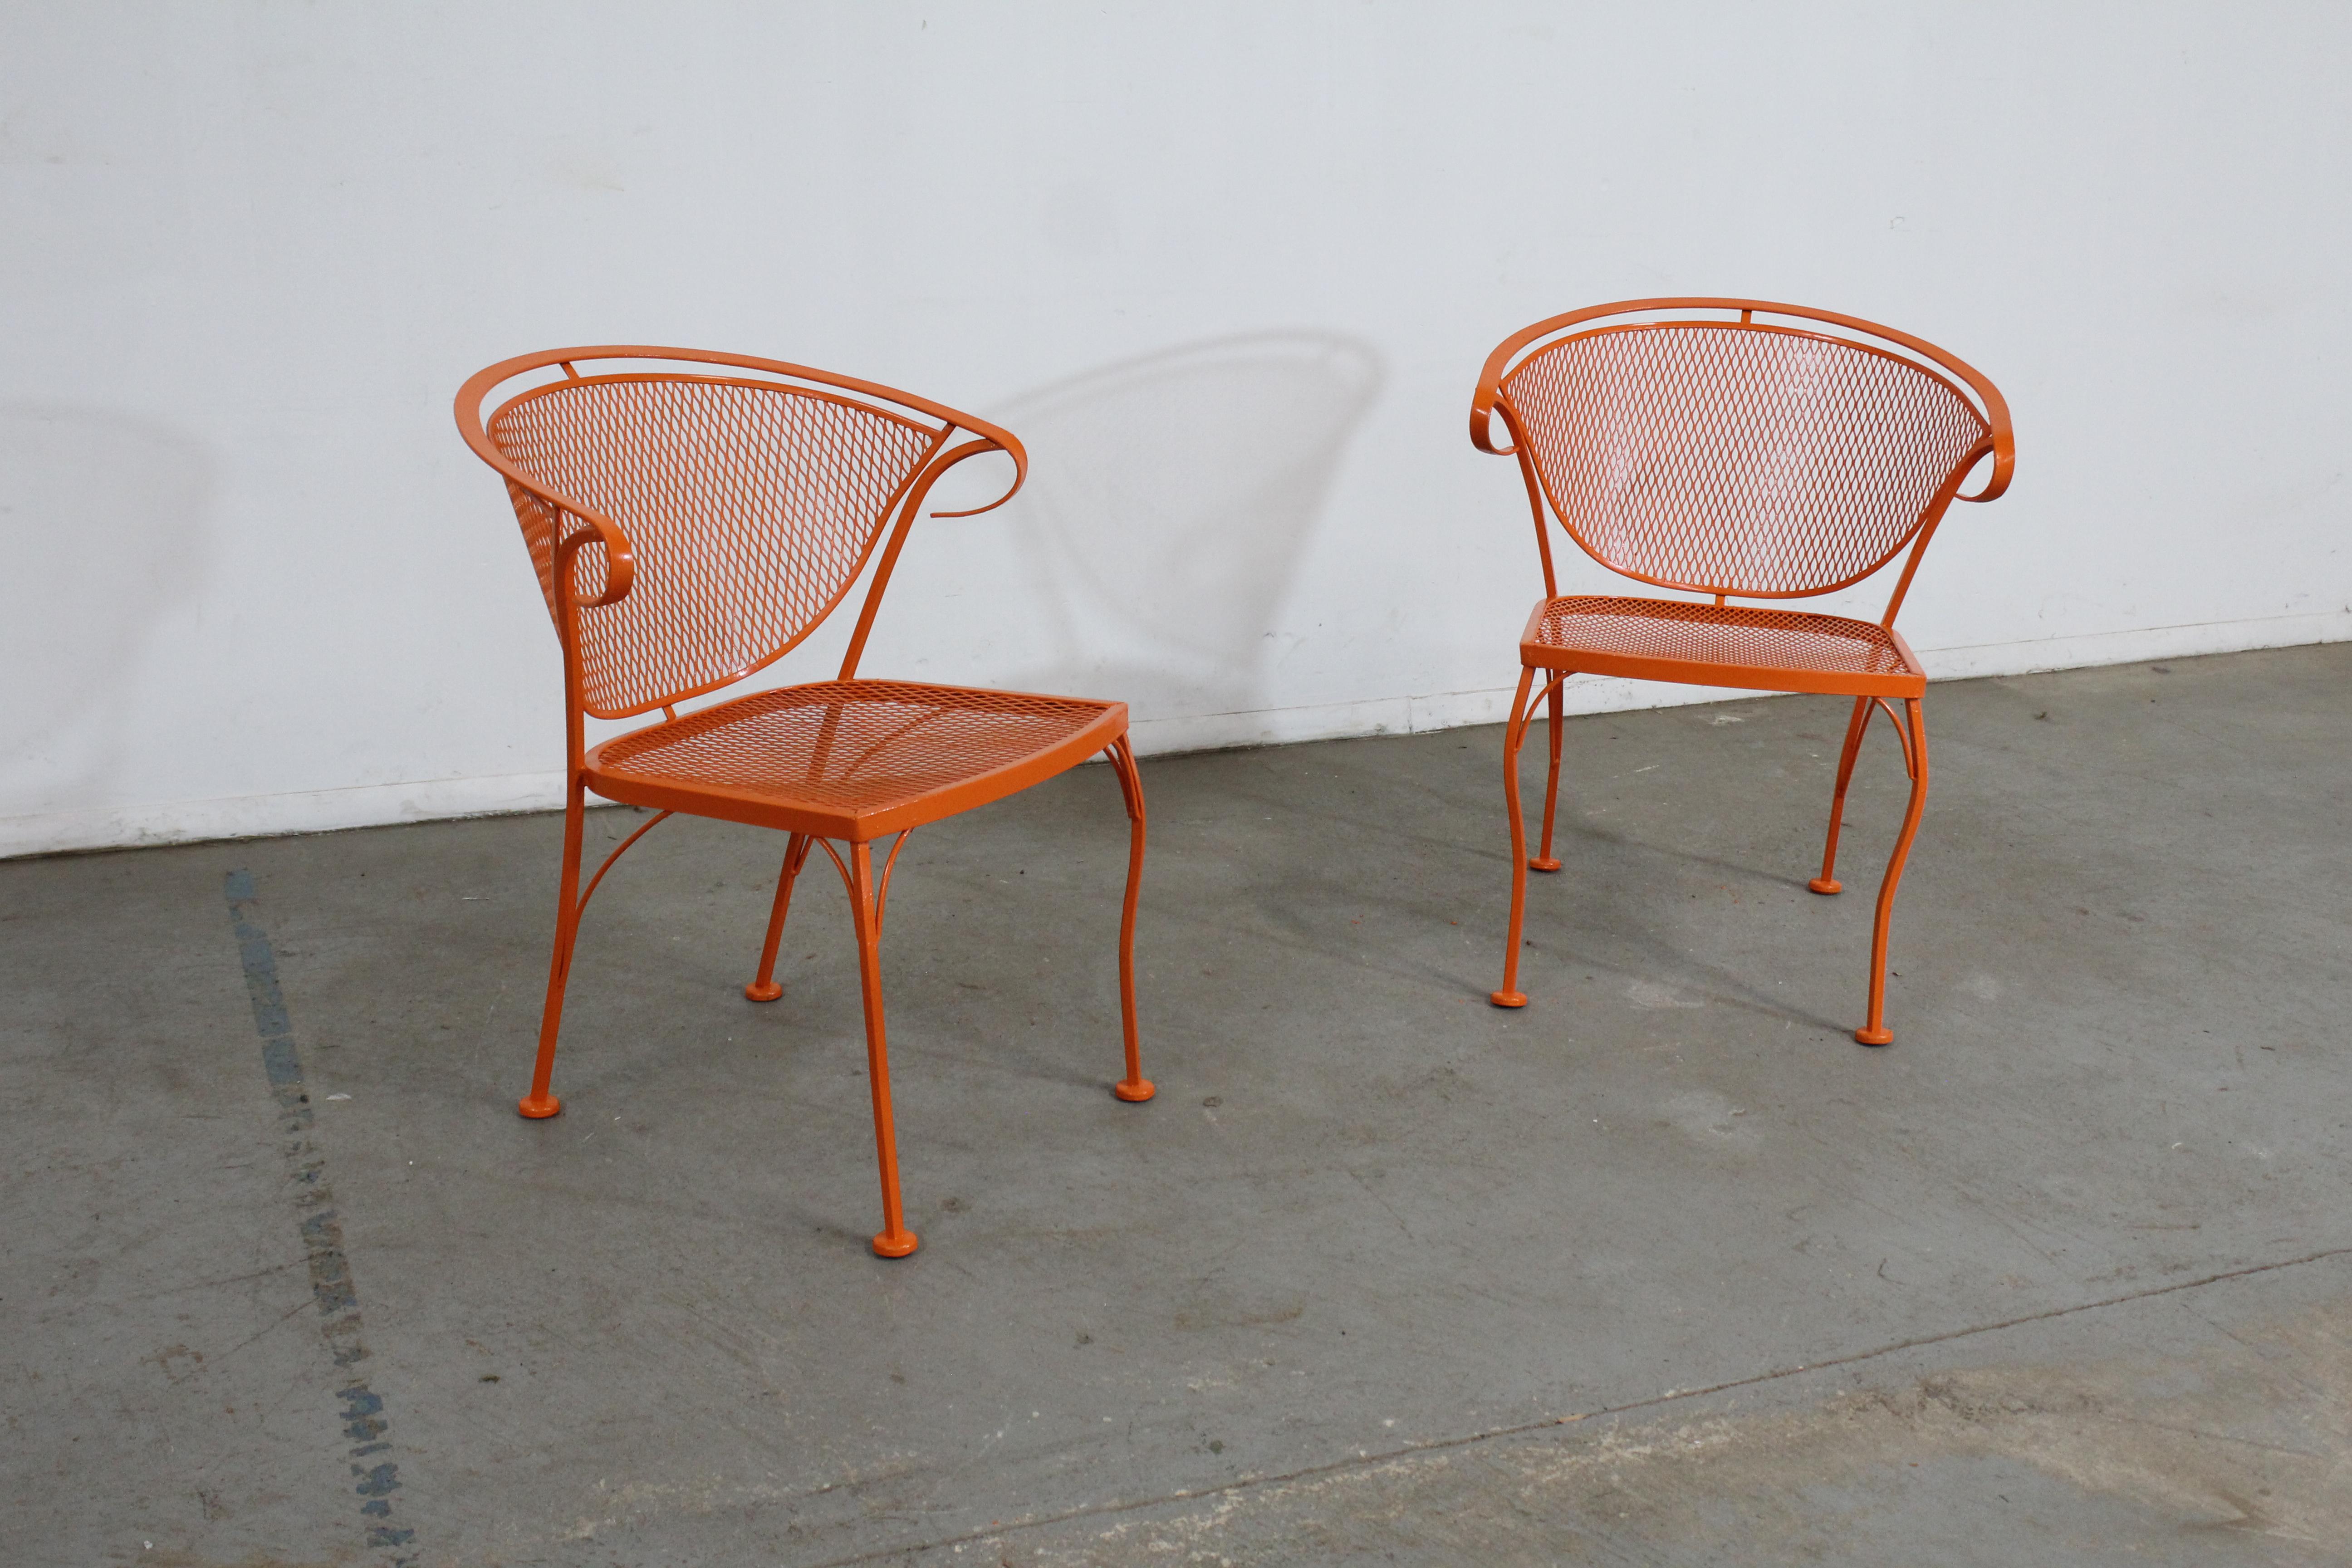 Paire de chaises d'extérieur à dossier incurvé en métal, style Salterini, du milieu du siècle dernier, orange atomique B

Nous vous proposons une paire de chaises d'extérieur en métal à dossier incurvé Atomic orange, datant du milieu du siècle